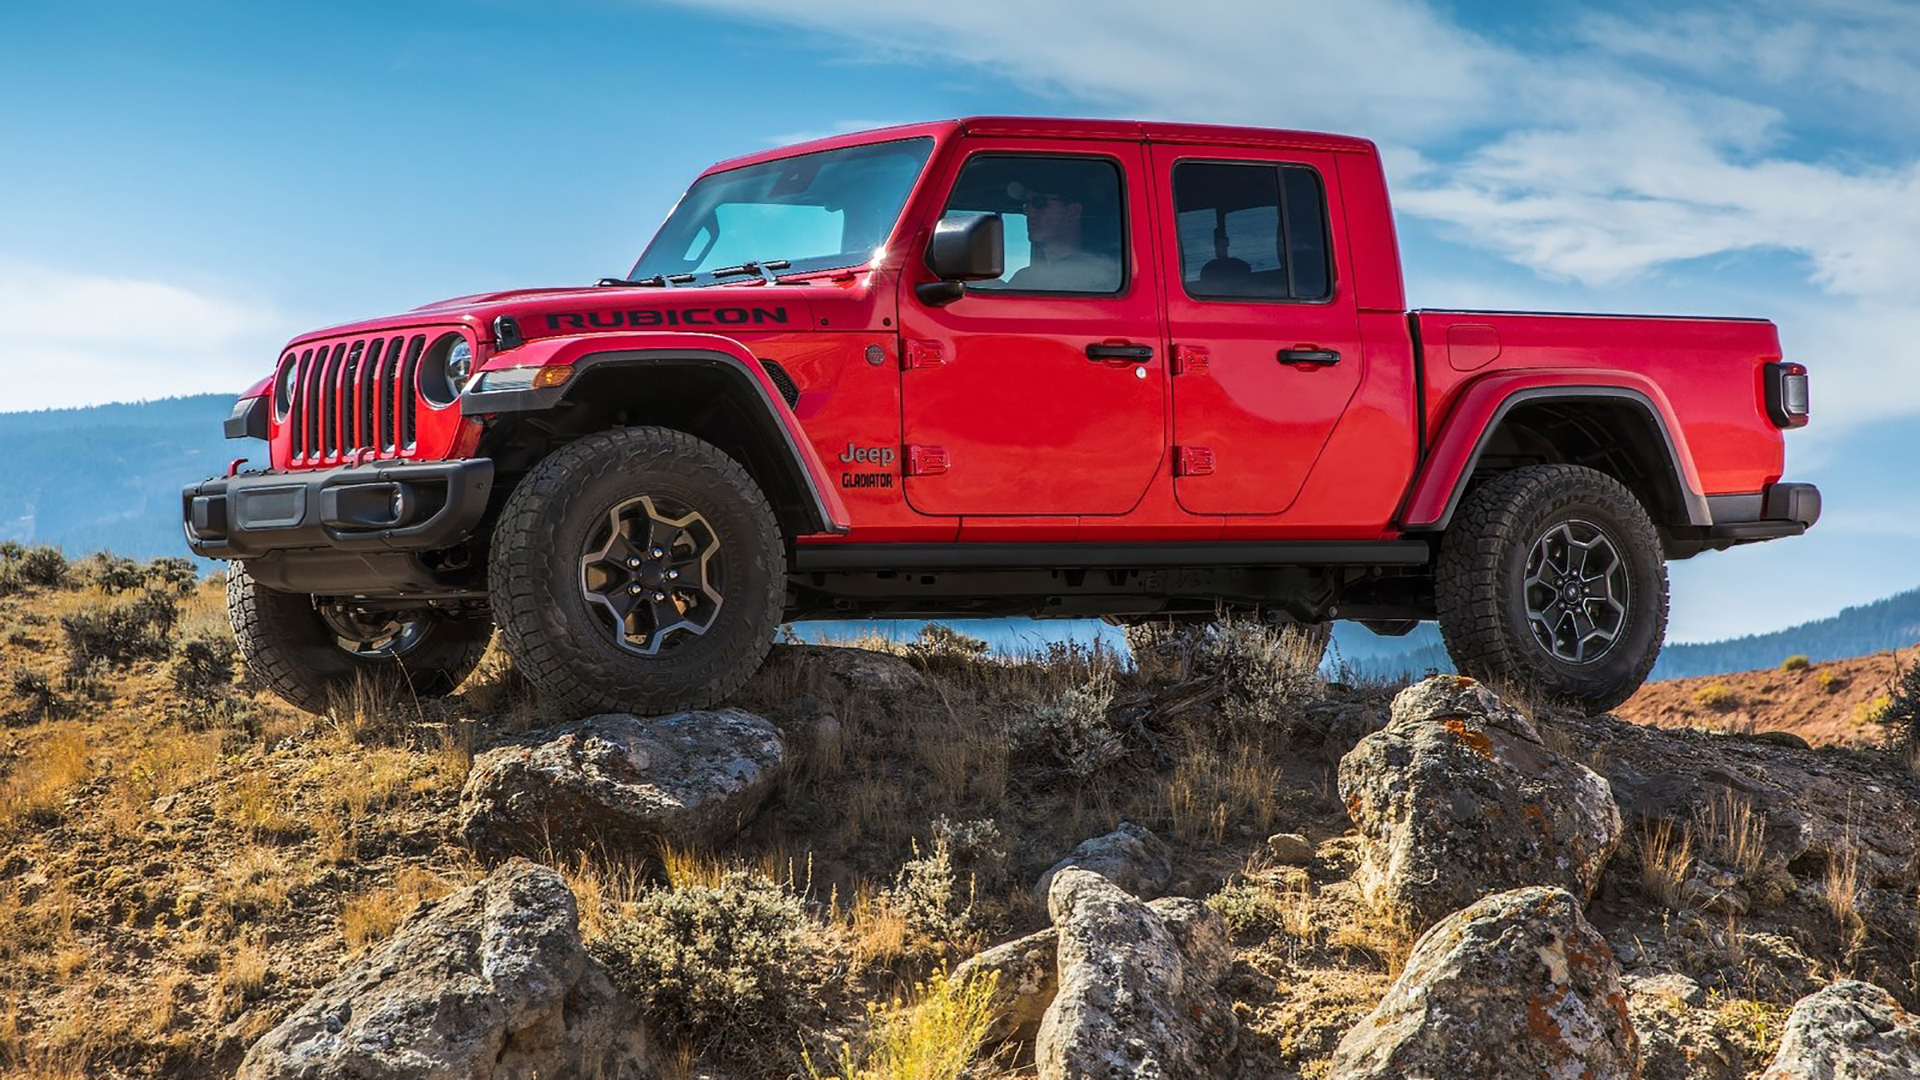 Jeep Gladiator 2020: Bán tải chính hãng có giá từ hơn 3,2 tỷ đồng